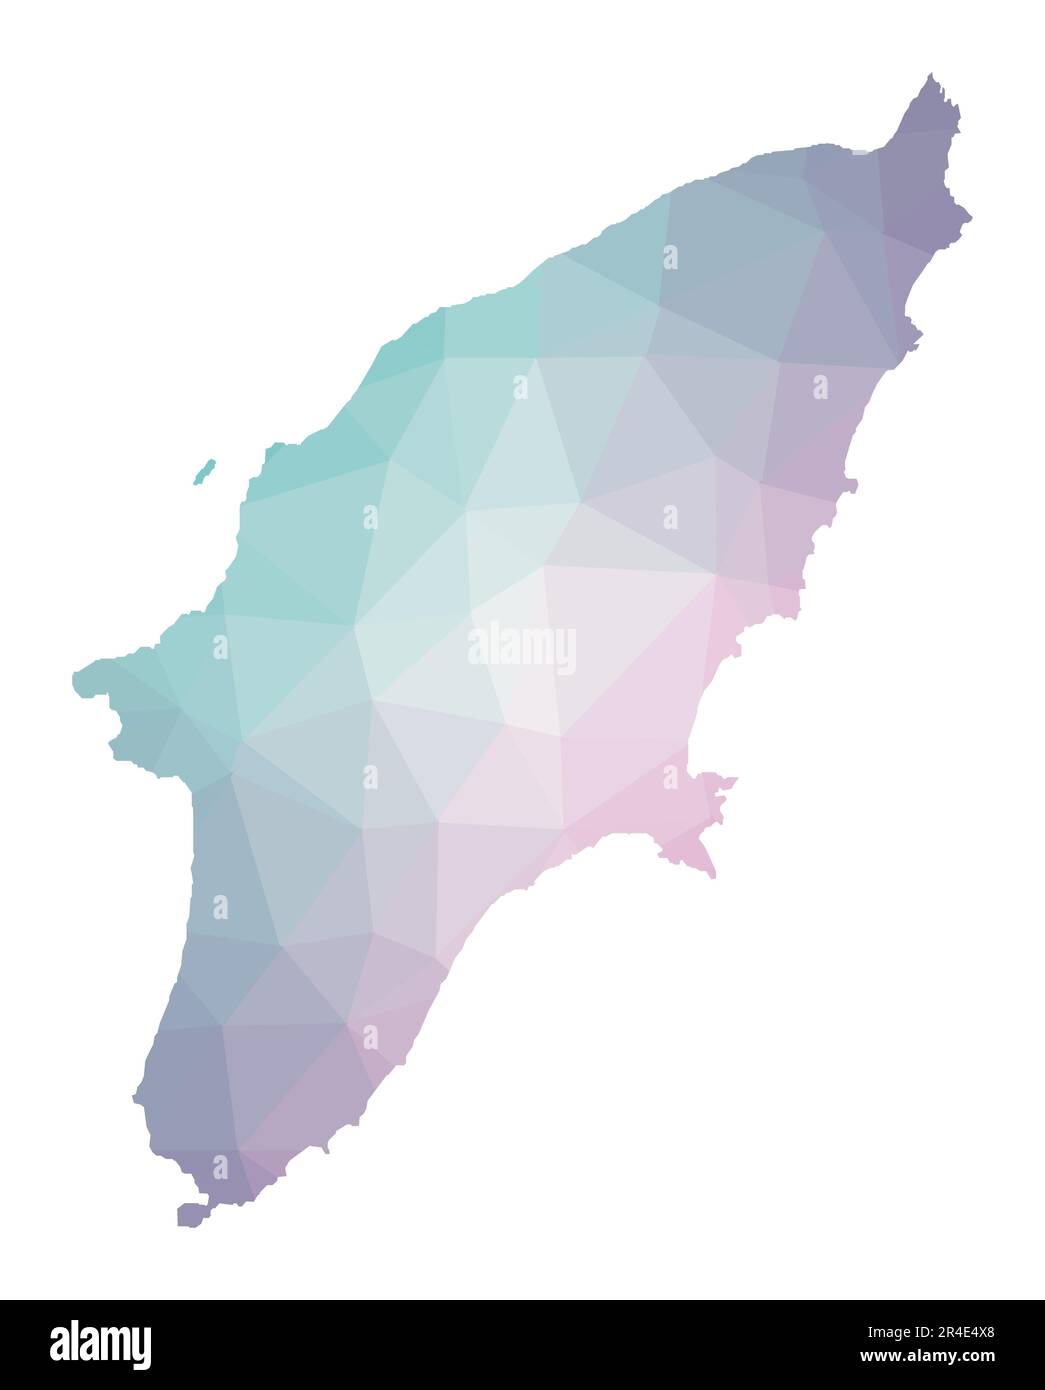 Mappa poligonale di Rodi. Illustrazione geometrica dell'isola in colori di ametista smeraldo. Mappa di Rodi in basso stile poly. Tecnologia, internet, rete Illustrazione Vettoriale